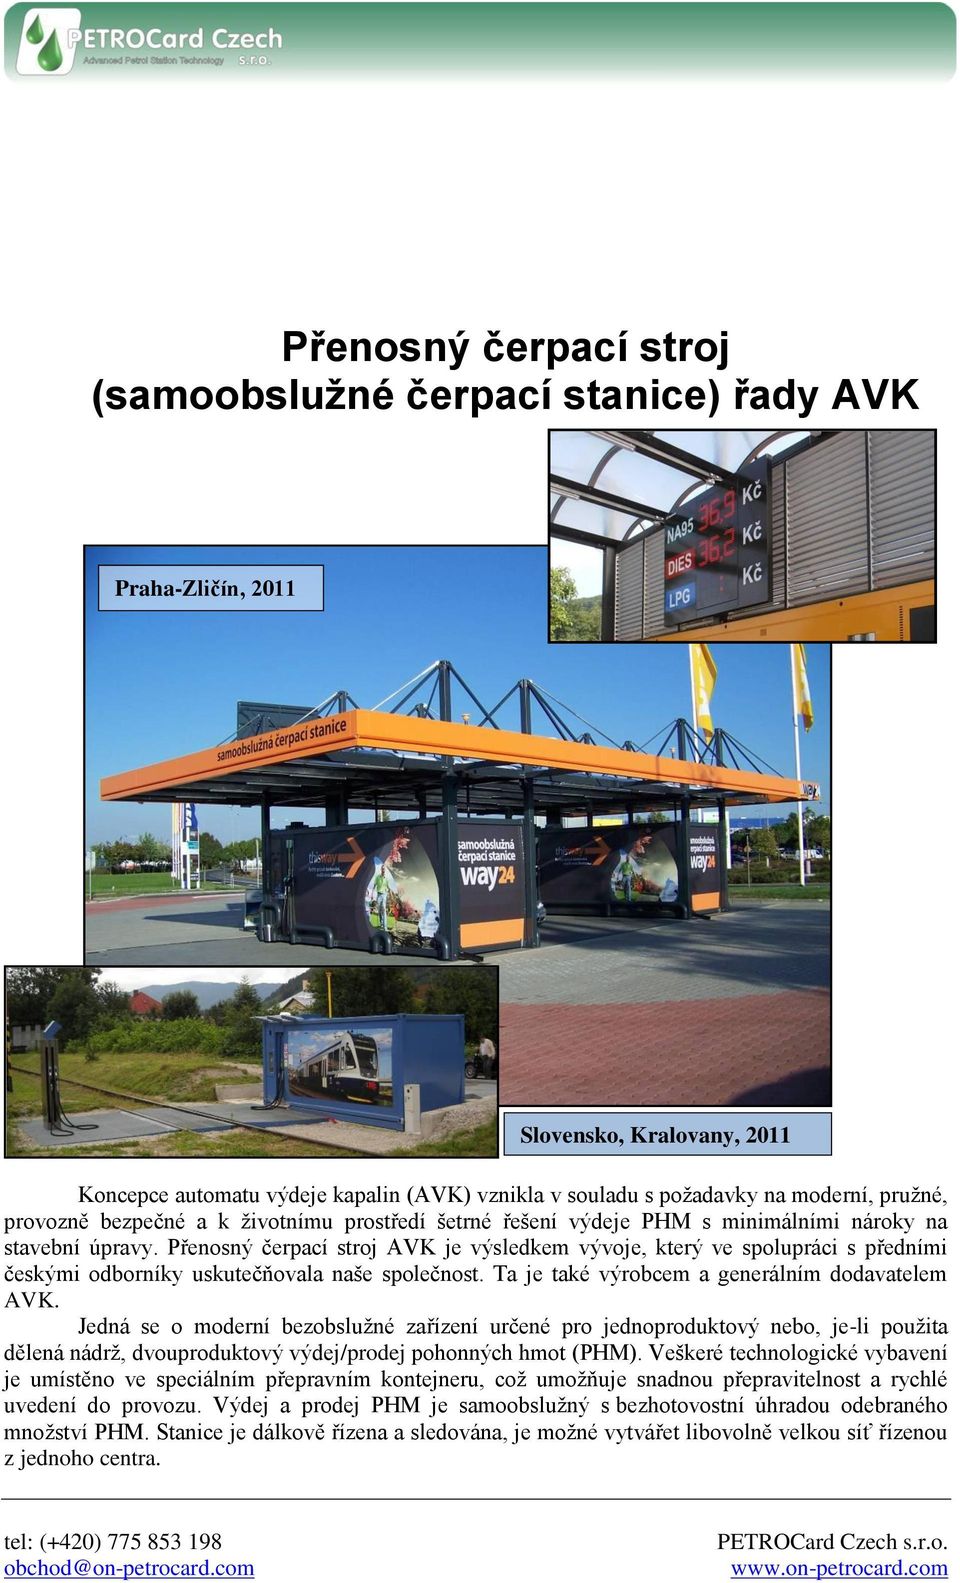 Přenosný čerpací stroj AVK je výsledkem vývoje, který ve spolupráci s předními českými odborníky uskutečňovala naše společnost. Ta je také výrobcem a generálním dodavatelem AVK.